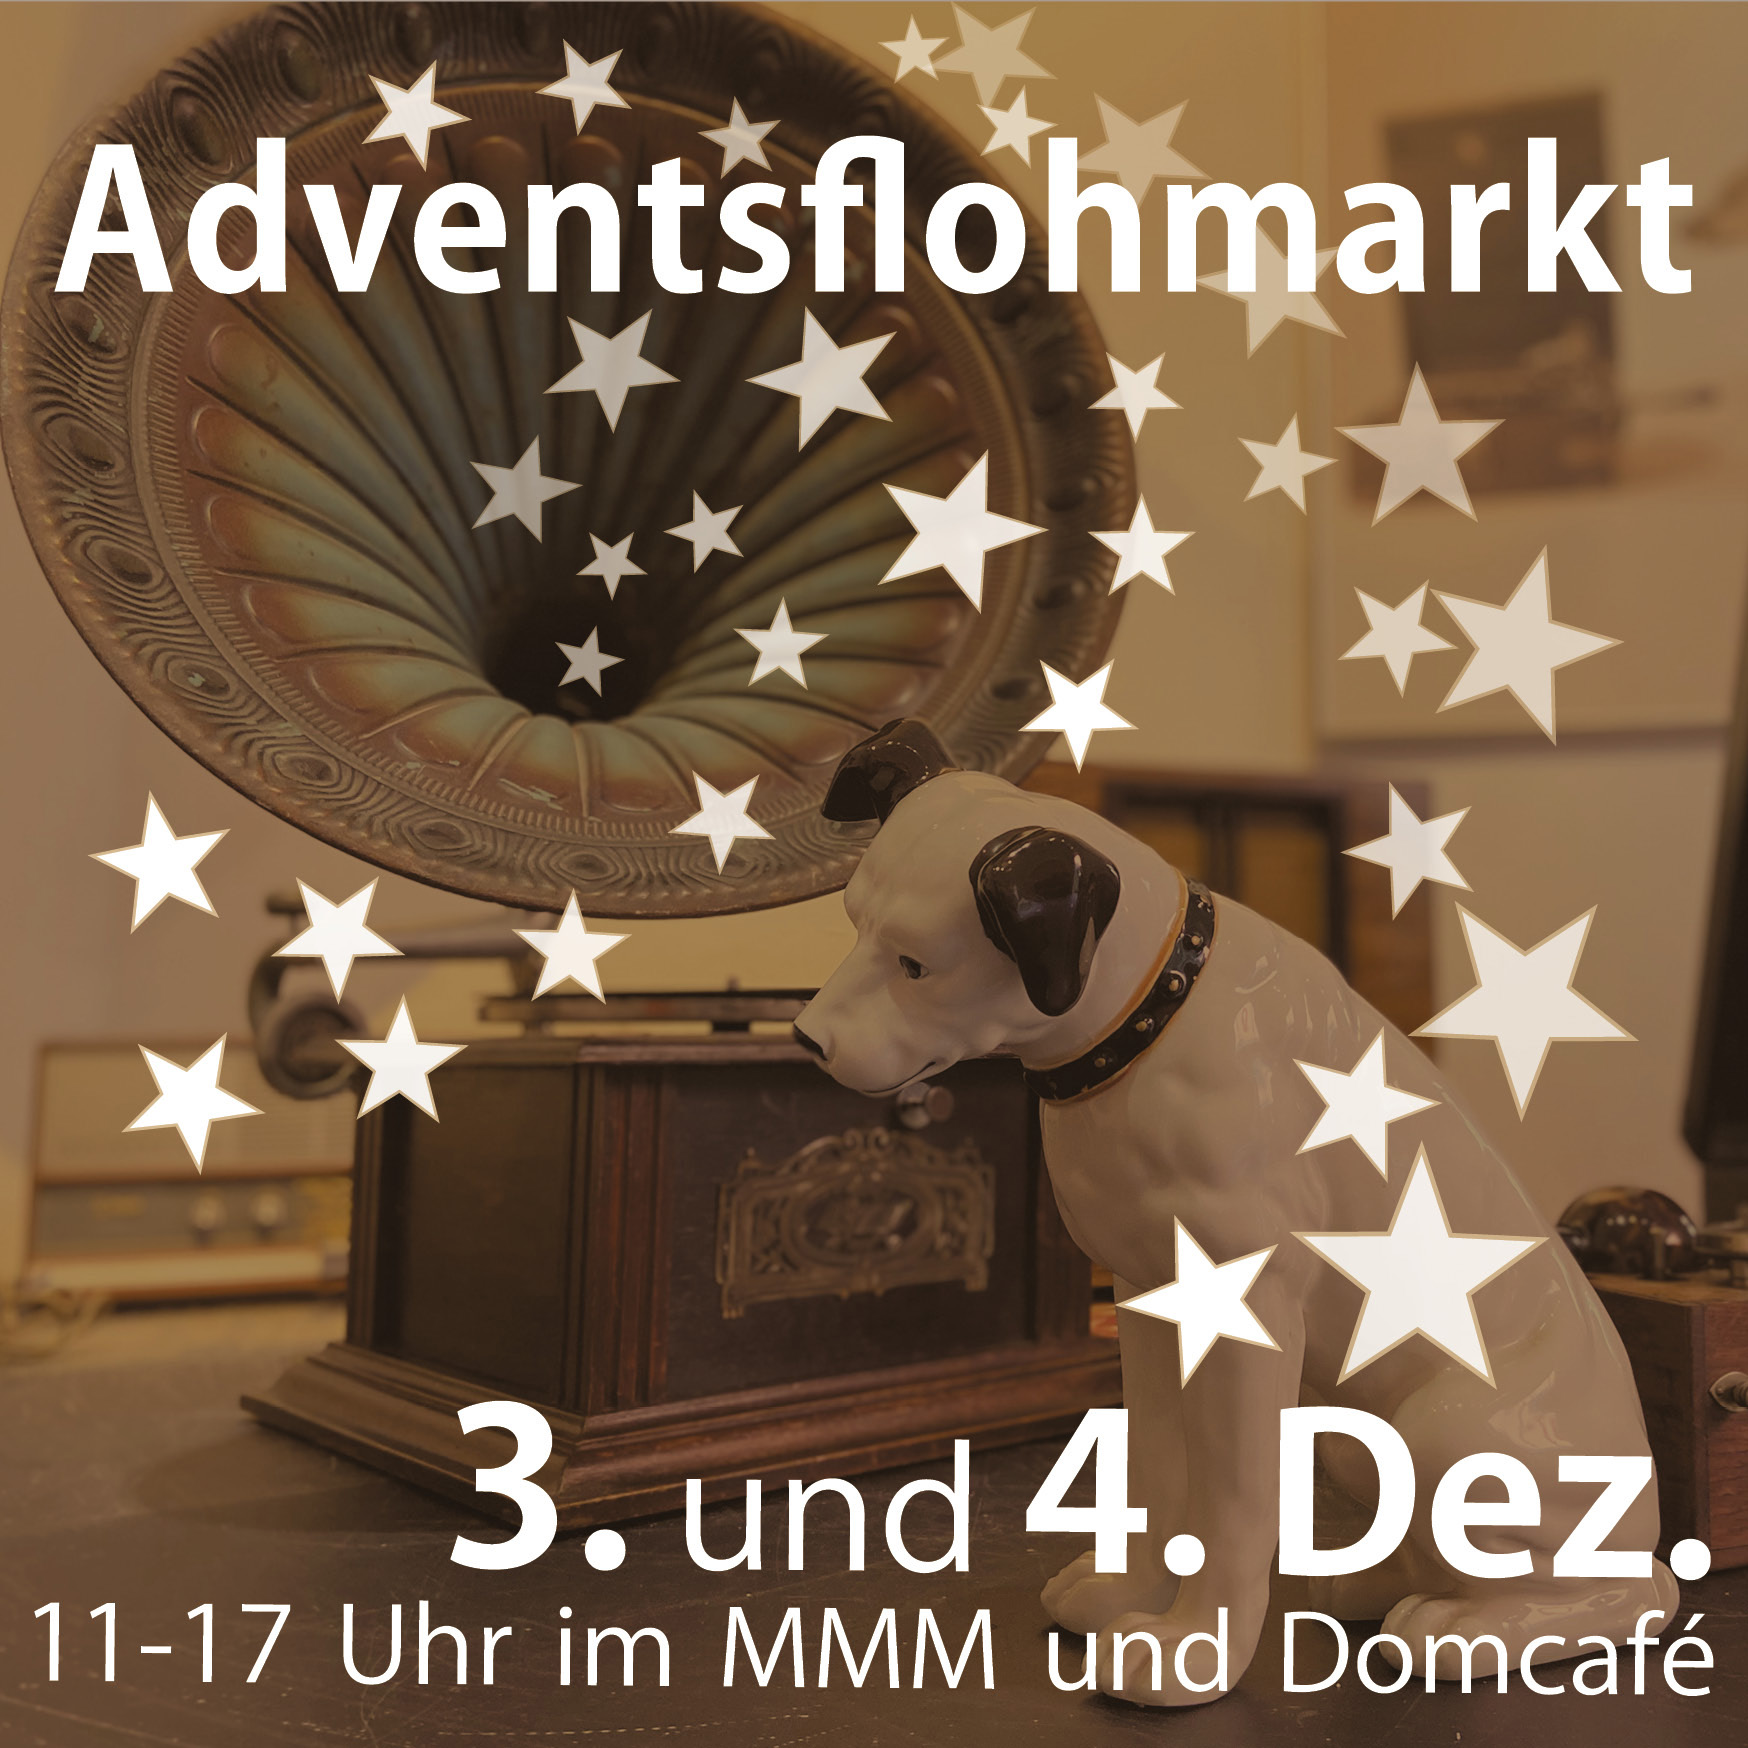 Willkommen auf dem Adventsflohmarkt am 3. und 4. Dezember!